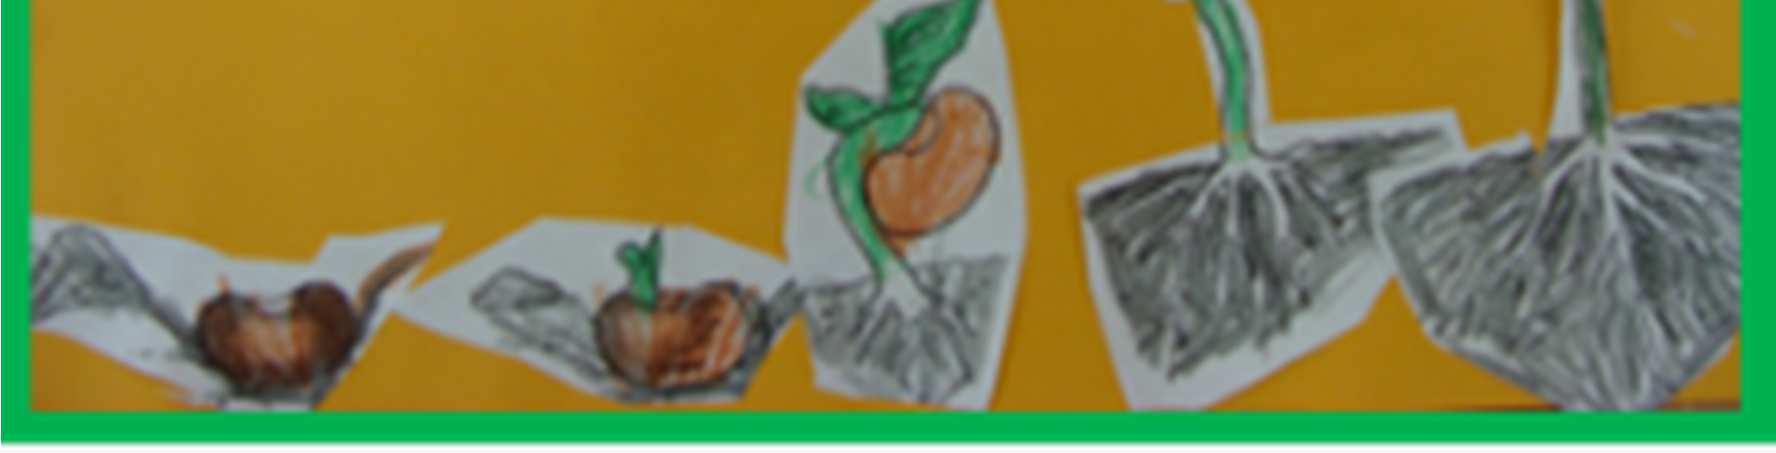 Wszystko zaczyna się od nasionka - Przedszkole Bajka w Opolu Dzieci z przedszkola nr 16 w Koszalinie również kolorowały poszczególne obrazki przedstawiające drogę nasionka do roślinki, a następnie